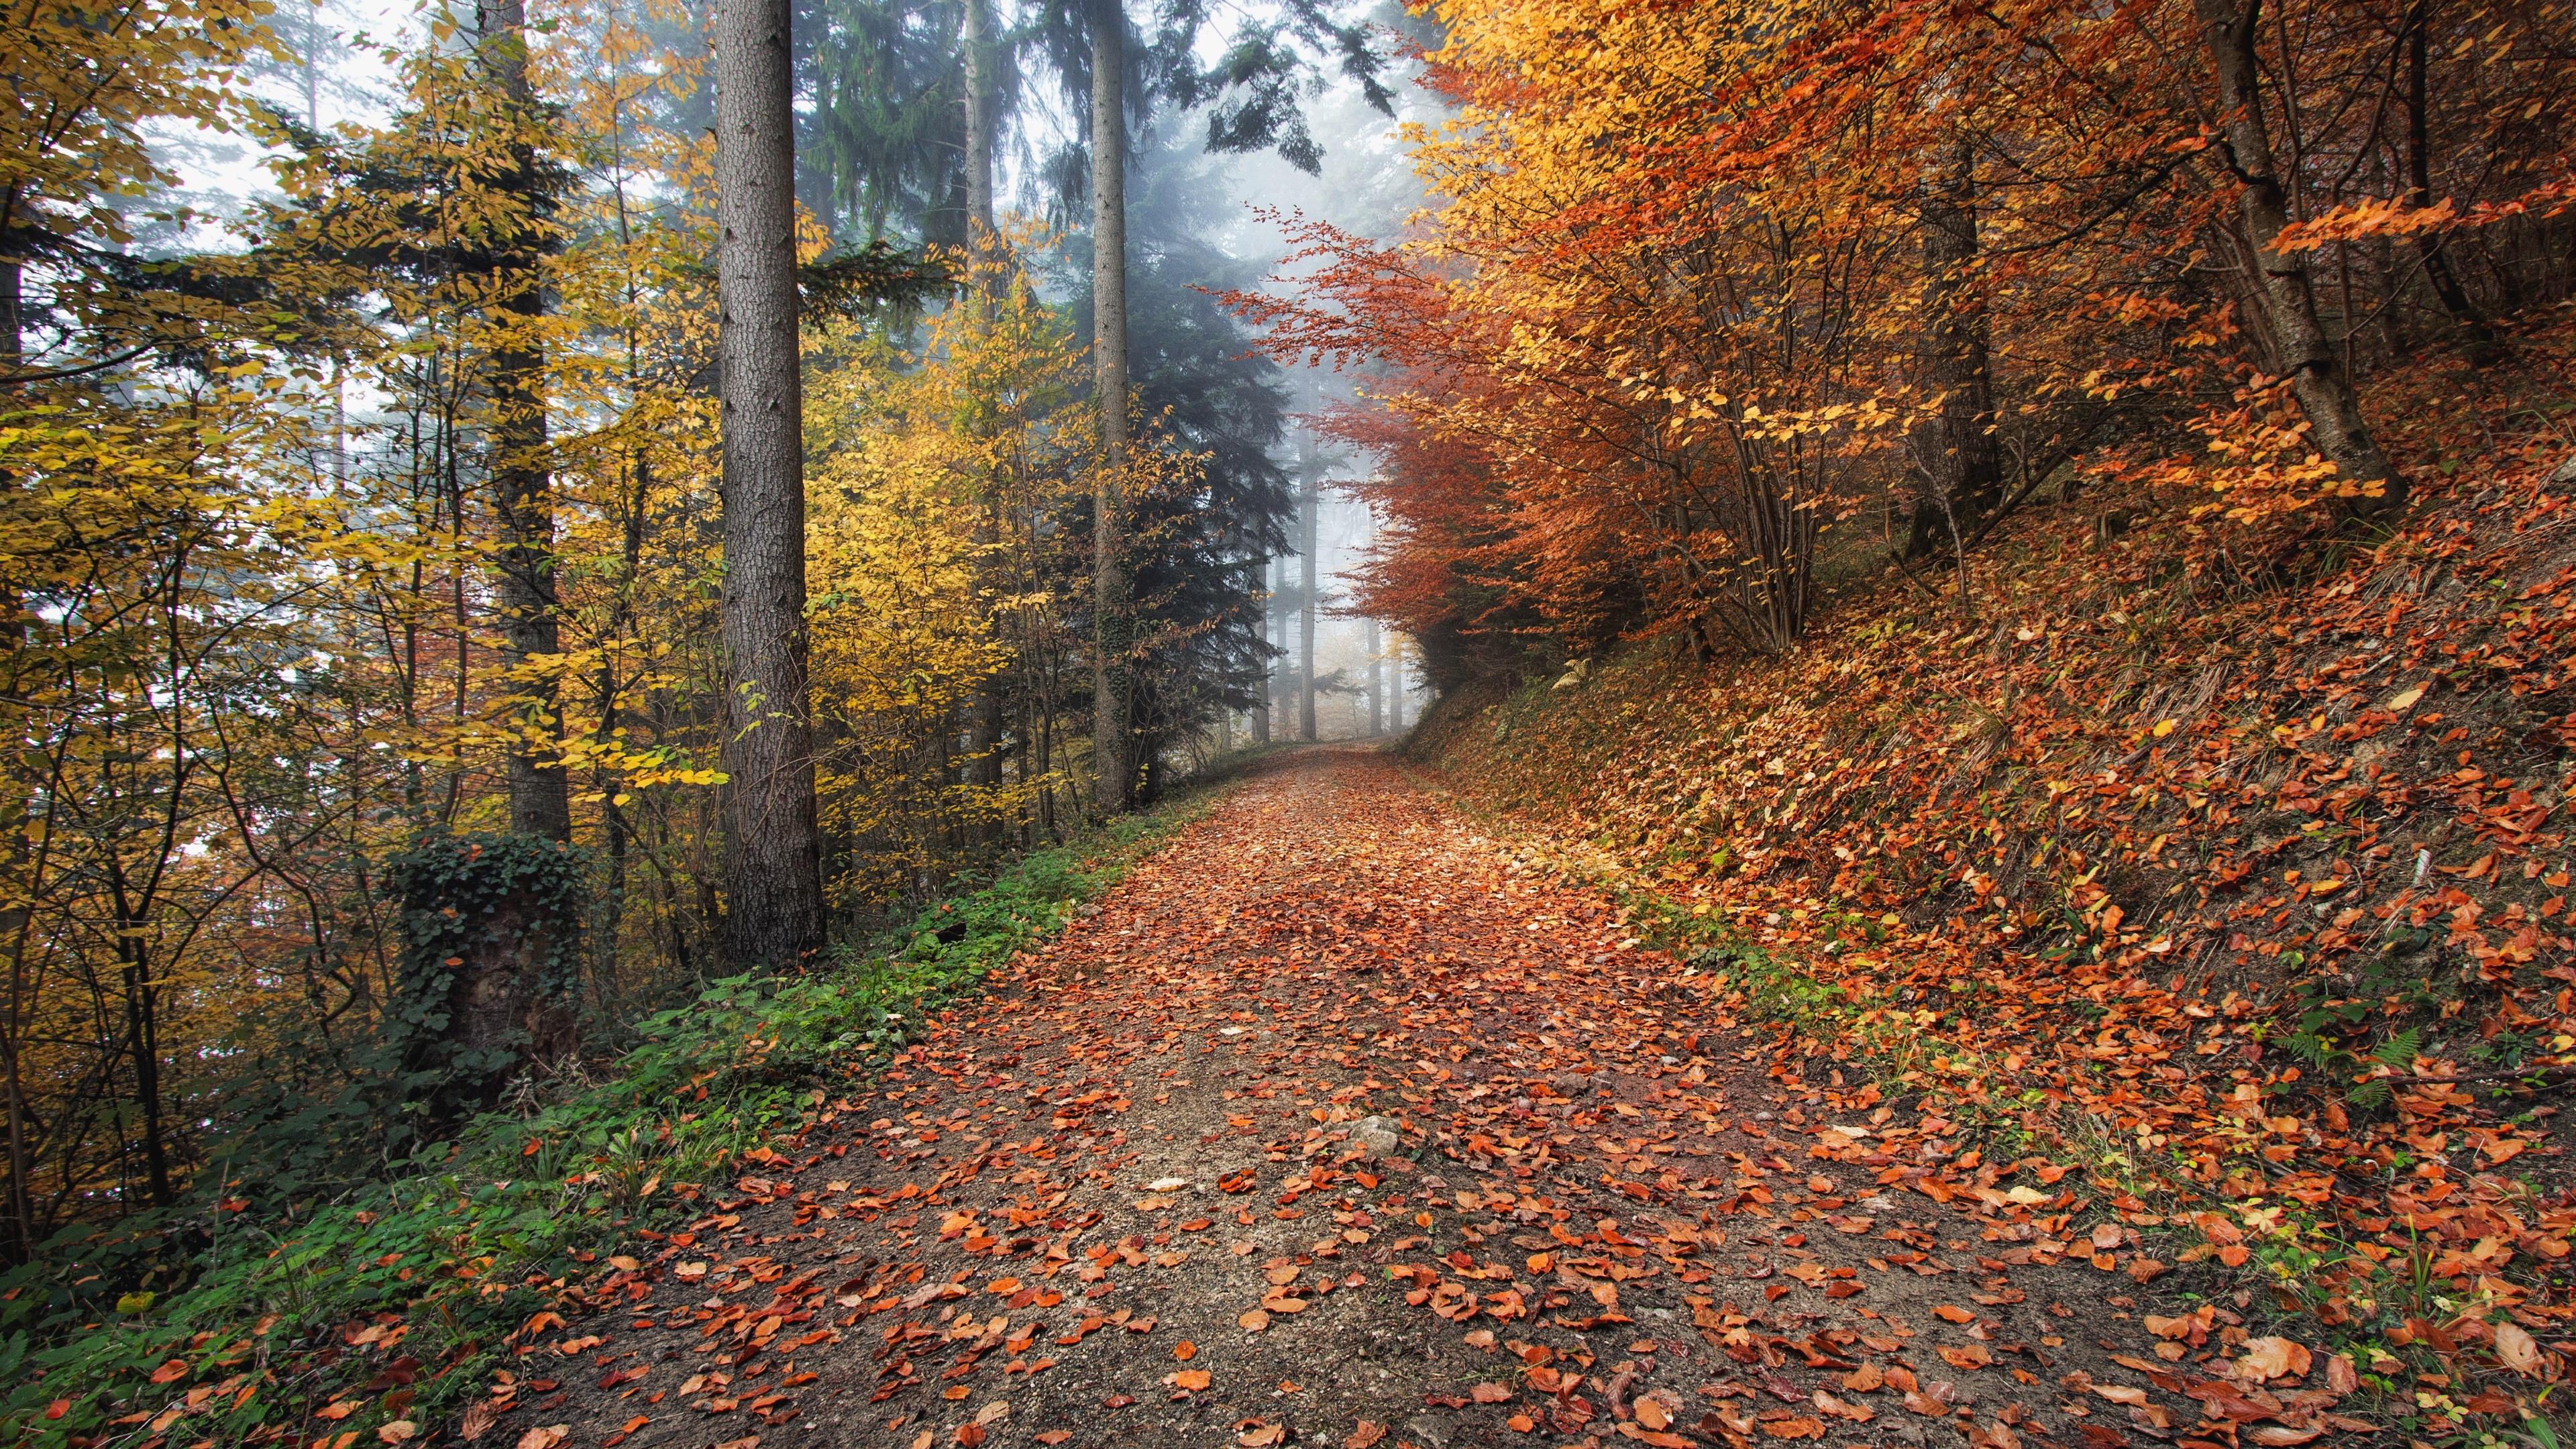 Download wallpaper: How nature looks Autumn in Kirchzarten